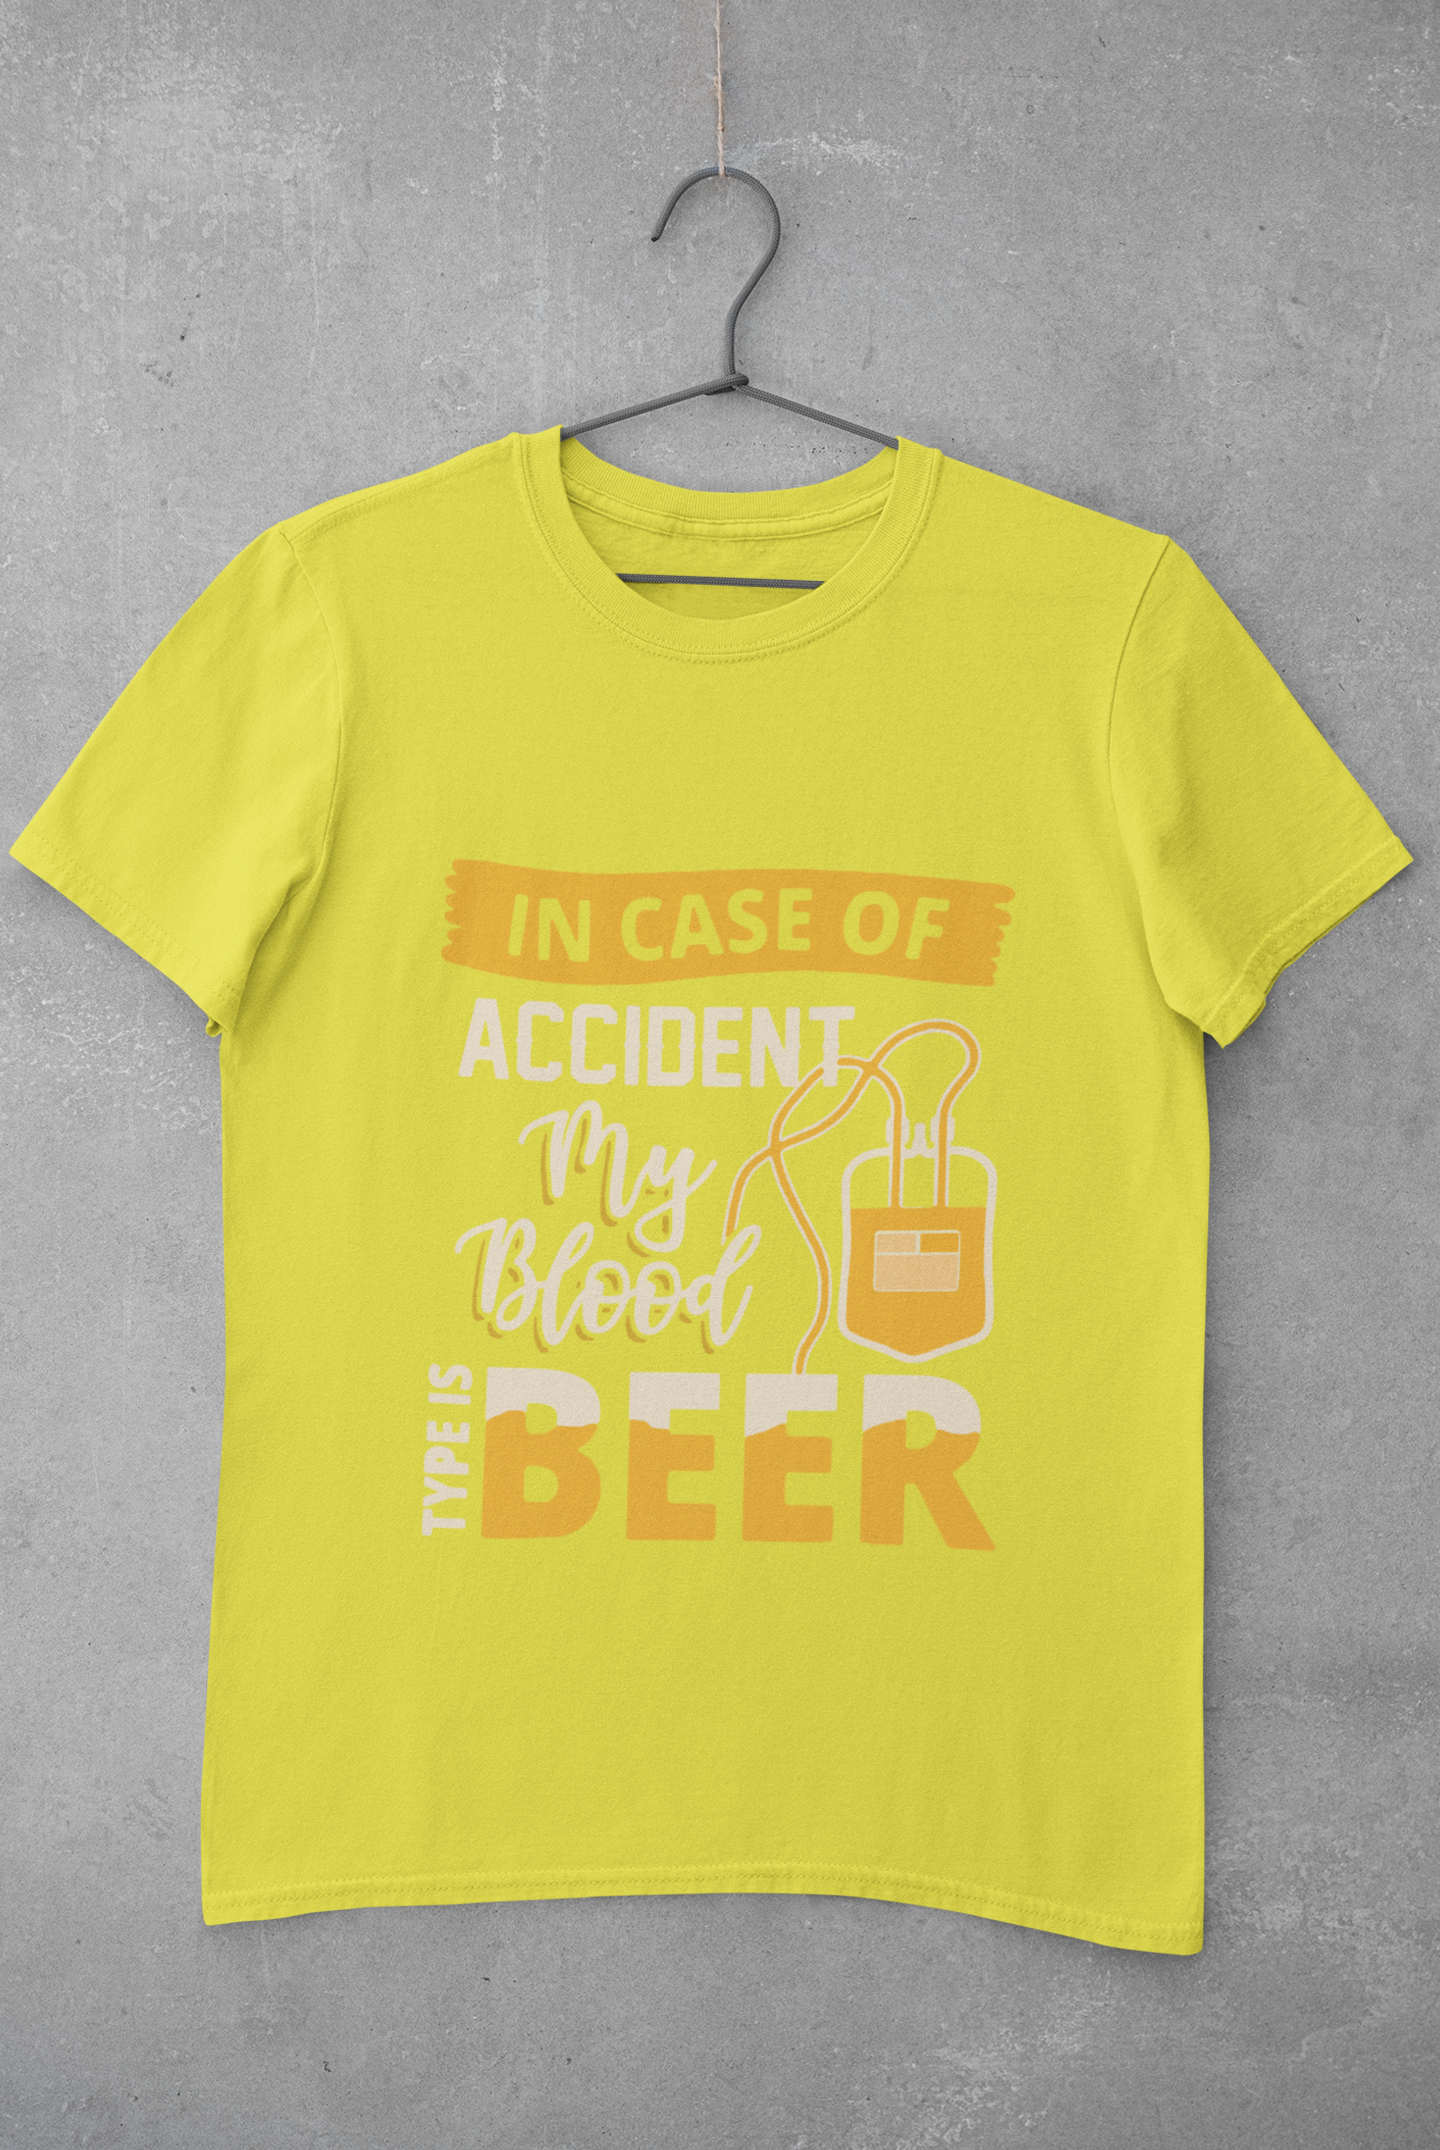 My Blood Type Is Beer Mens Half Sleeves T-shirt- FunkyTeesClub